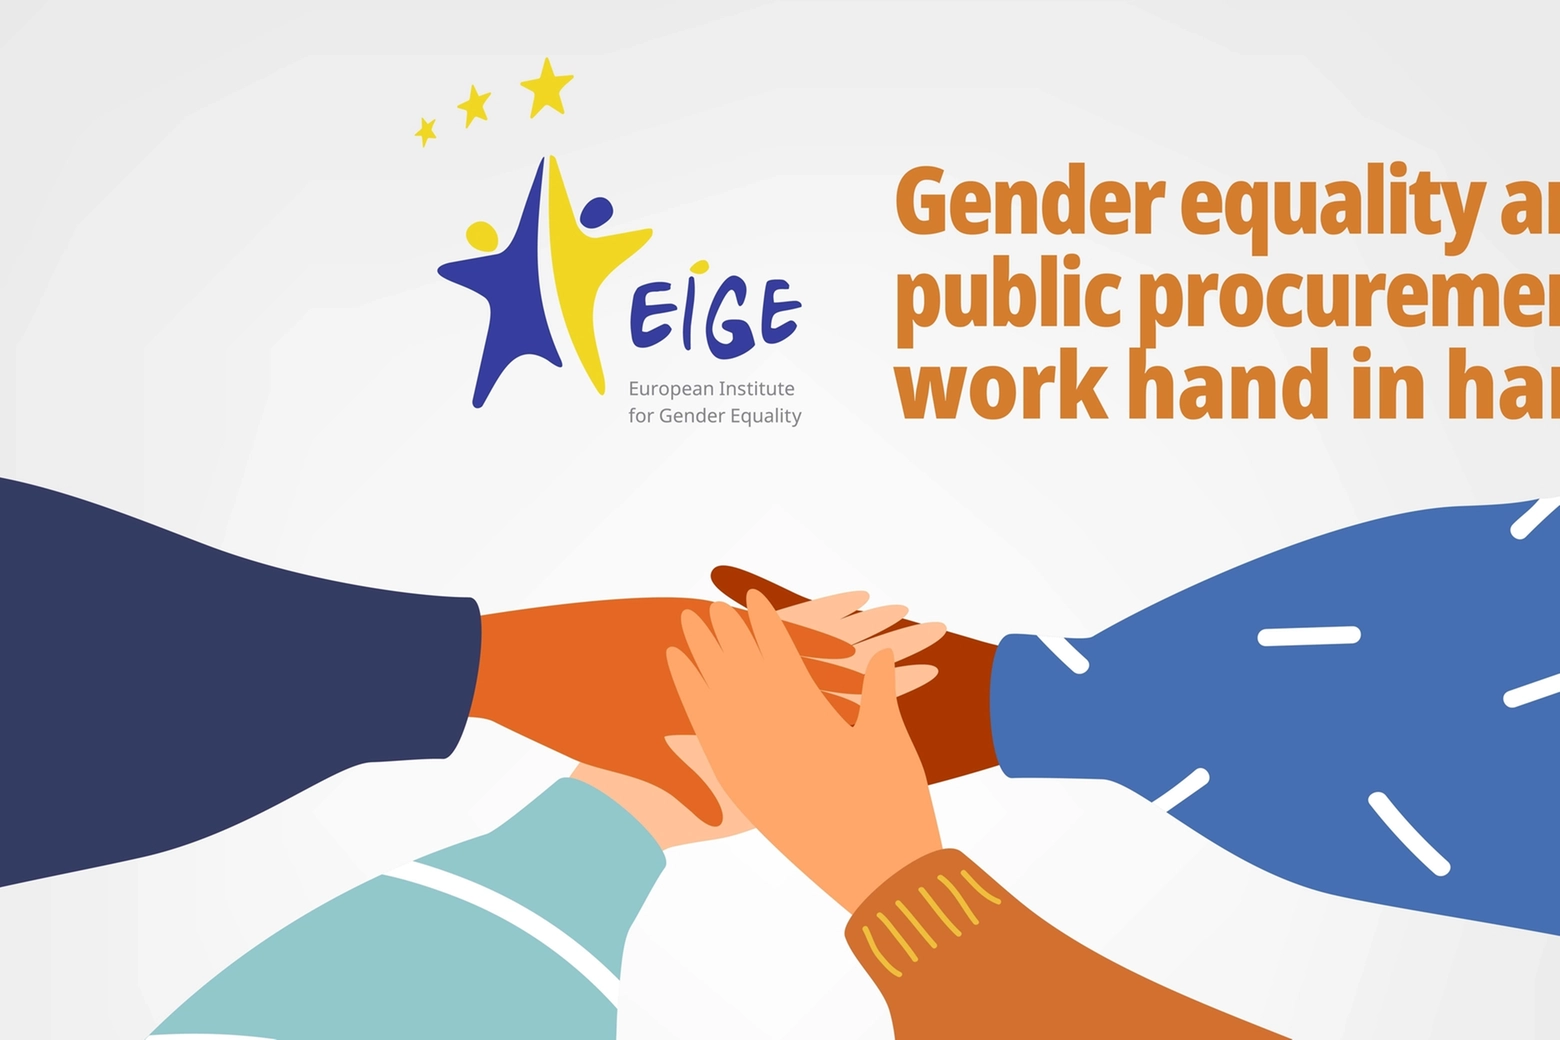 L'indice europeo sull'uguaglianza di genere stilato da Eige